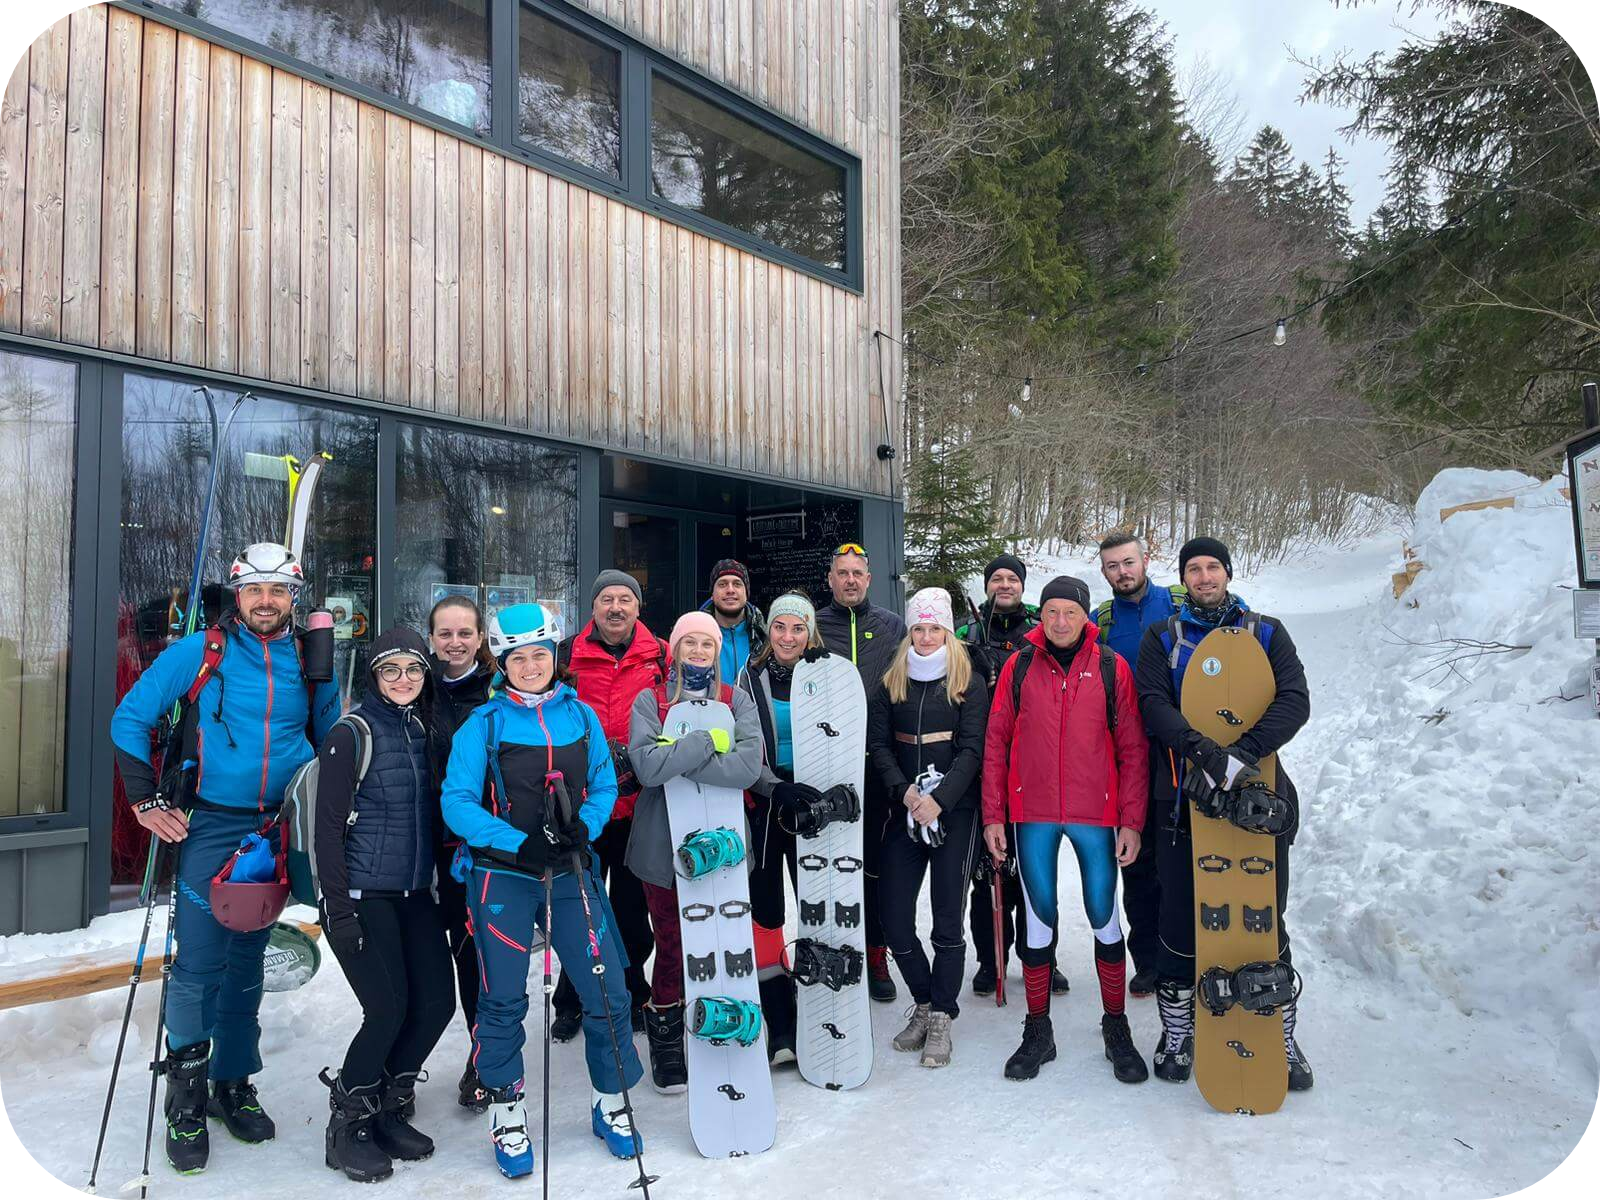 Zamestnanci spoločnosti JKBOZ stoja v zime pred chatou s lyžami a snowboardami, oblečení v teplom oblečení.